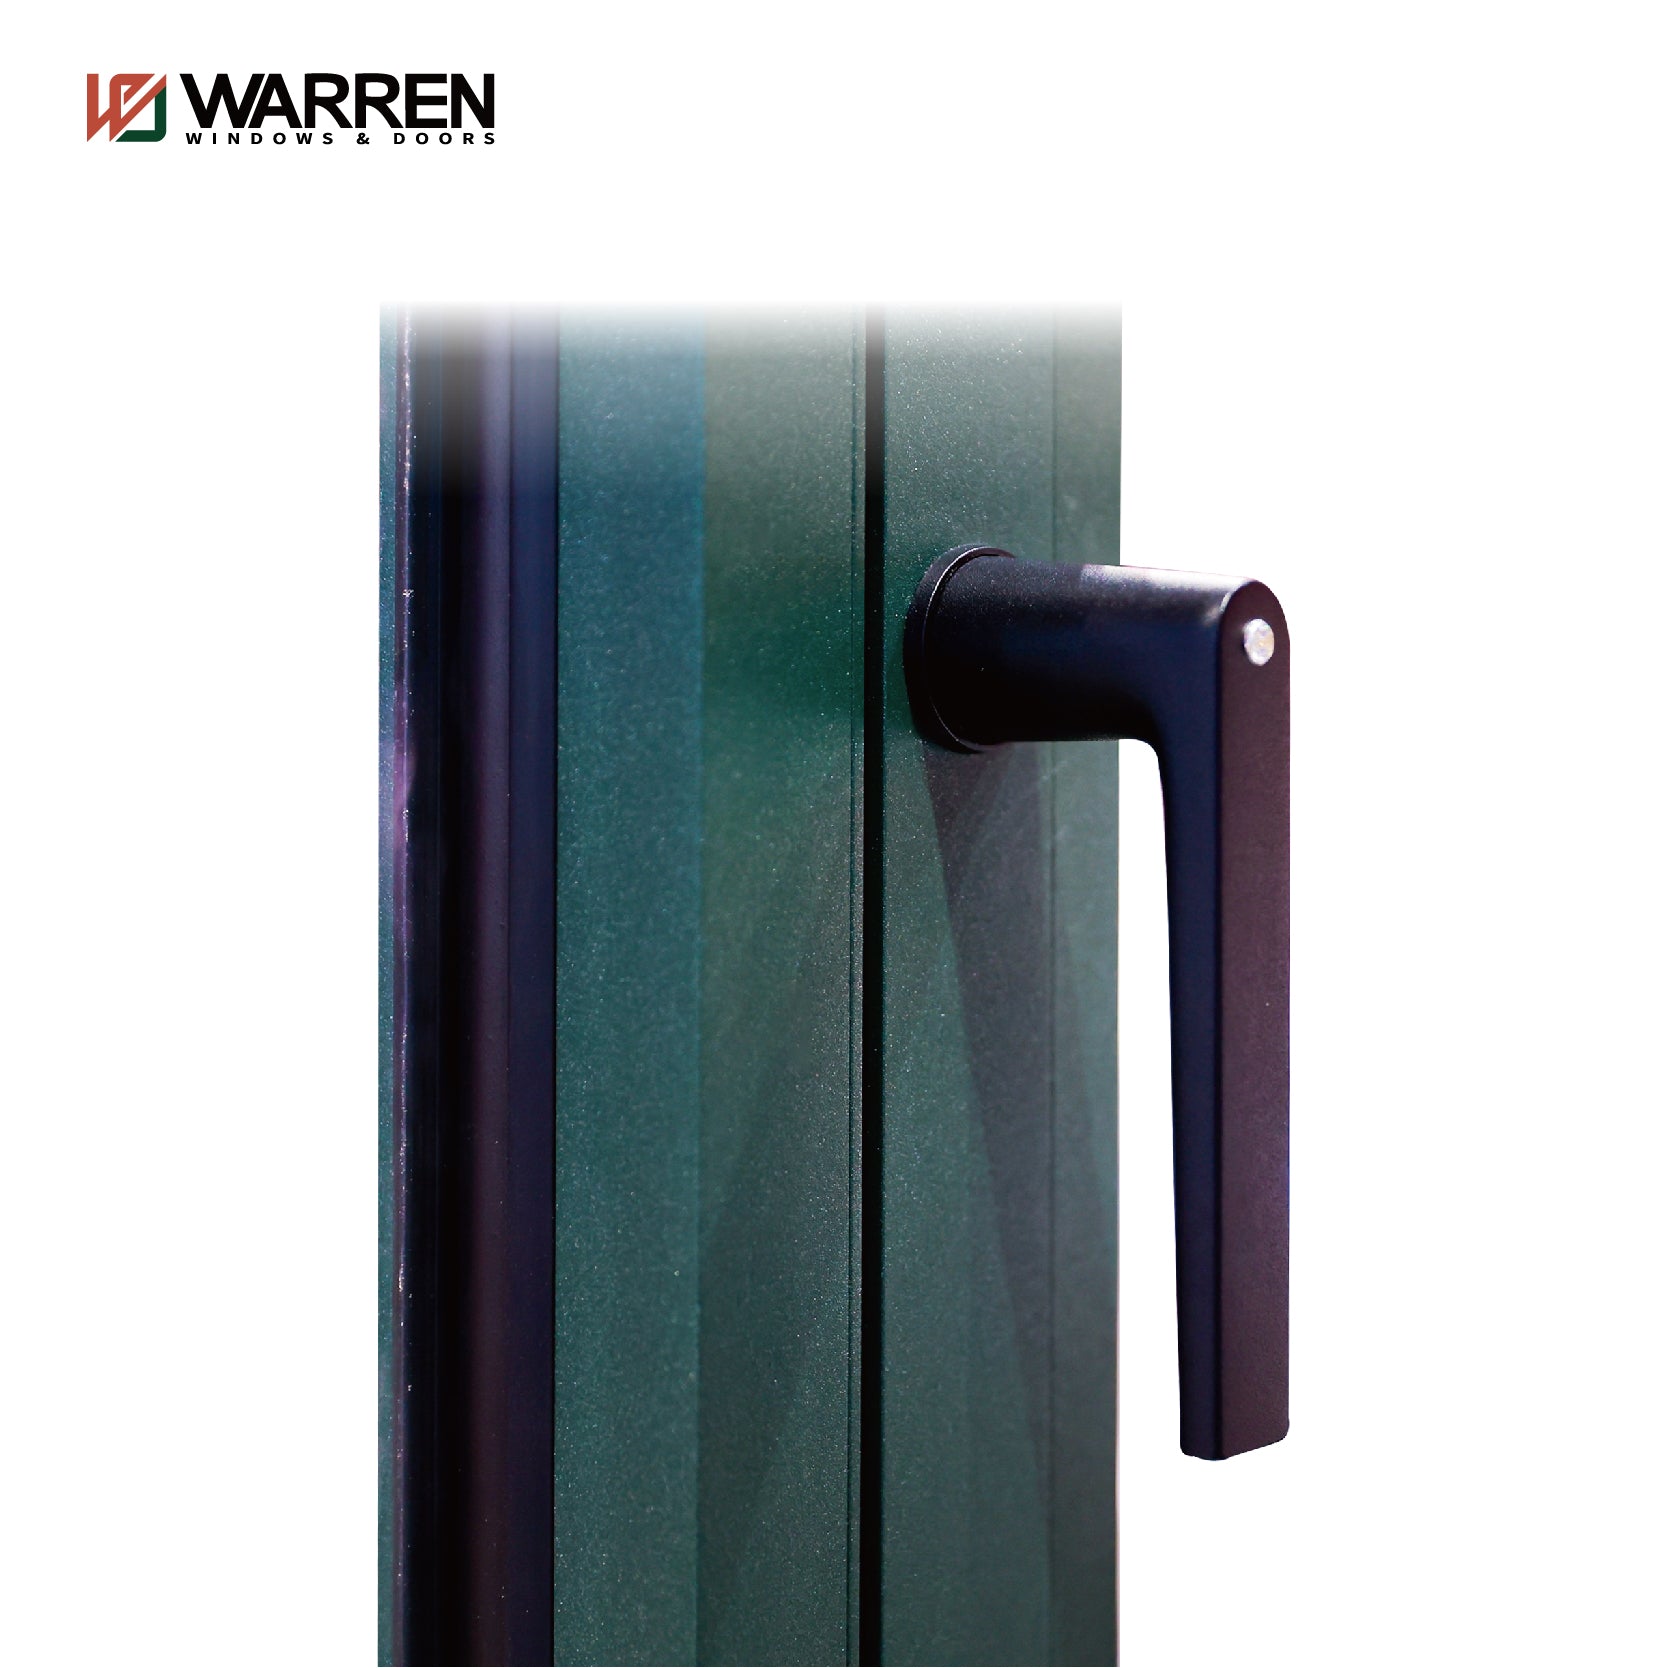 Warren 24x72 window Modern Popular Slim Line Durable Casement Picture Aluminum Window